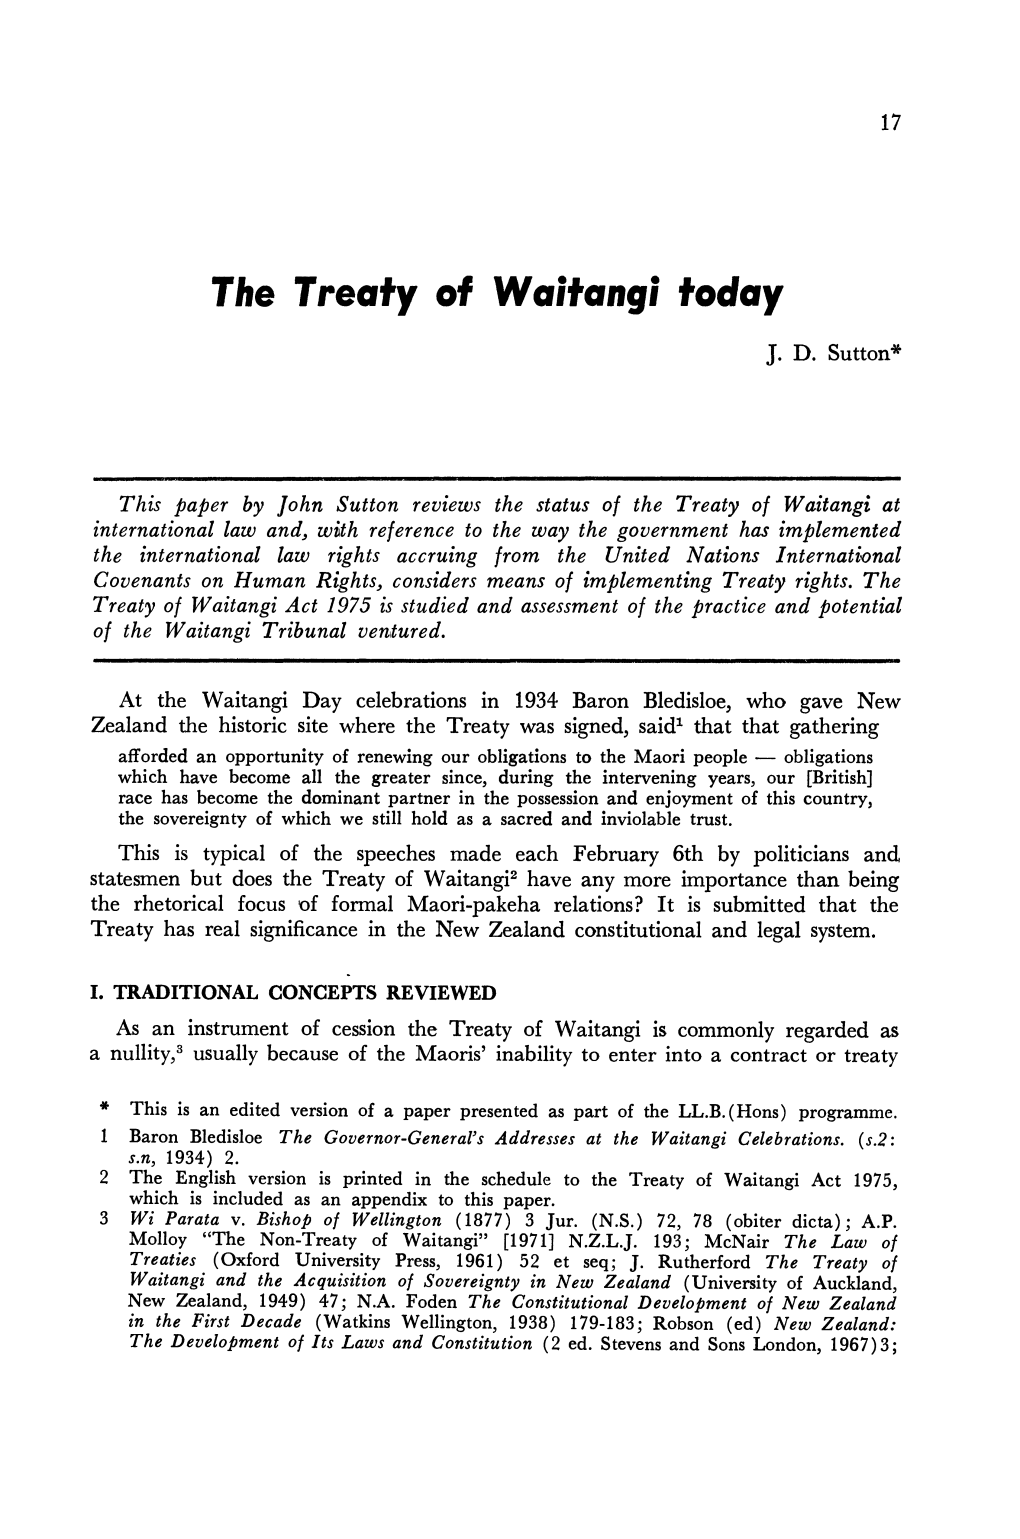 The Treaty of Waitangi Today